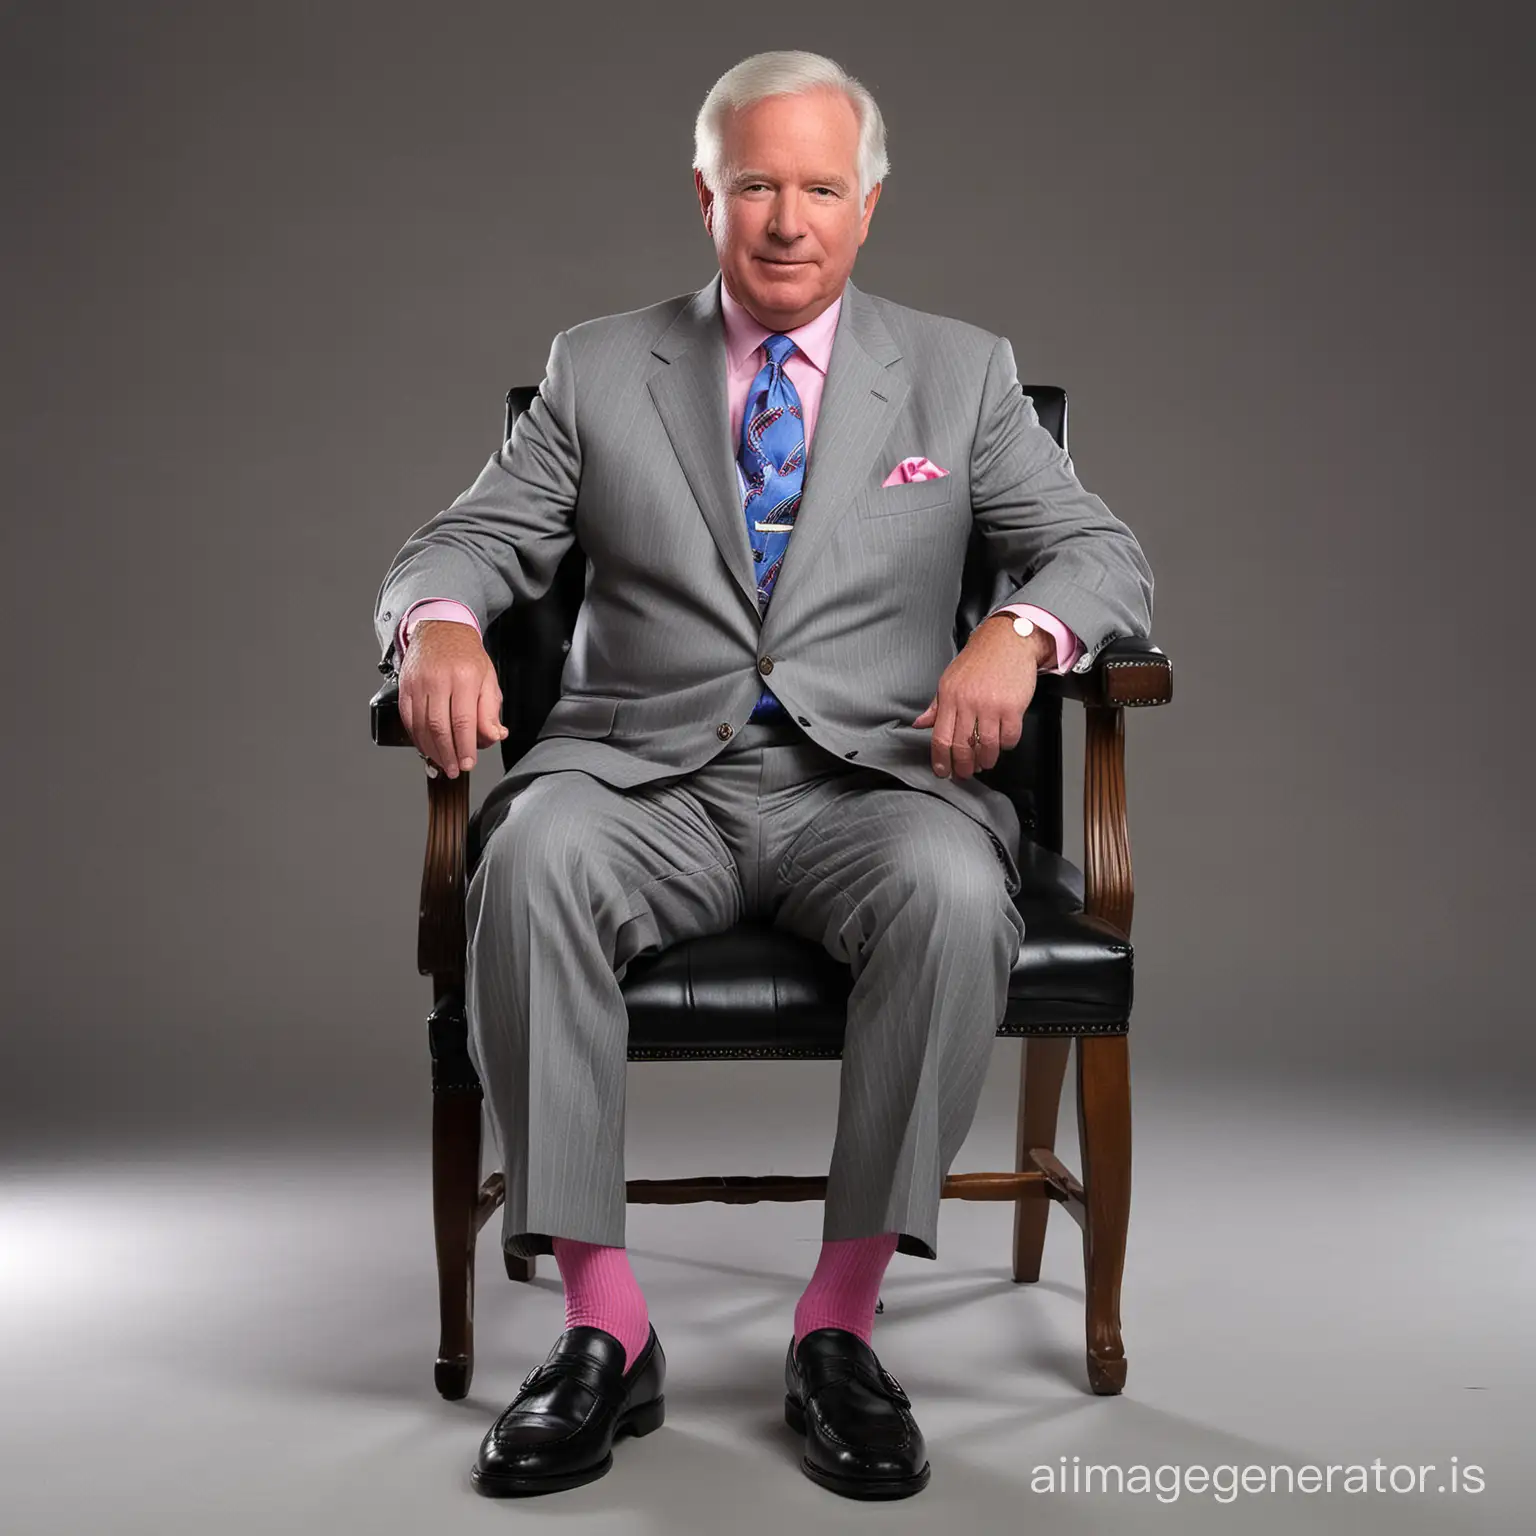 Elderly-Senator-in-Stylish-Attire-Sitting-Dramatically-on-Chair